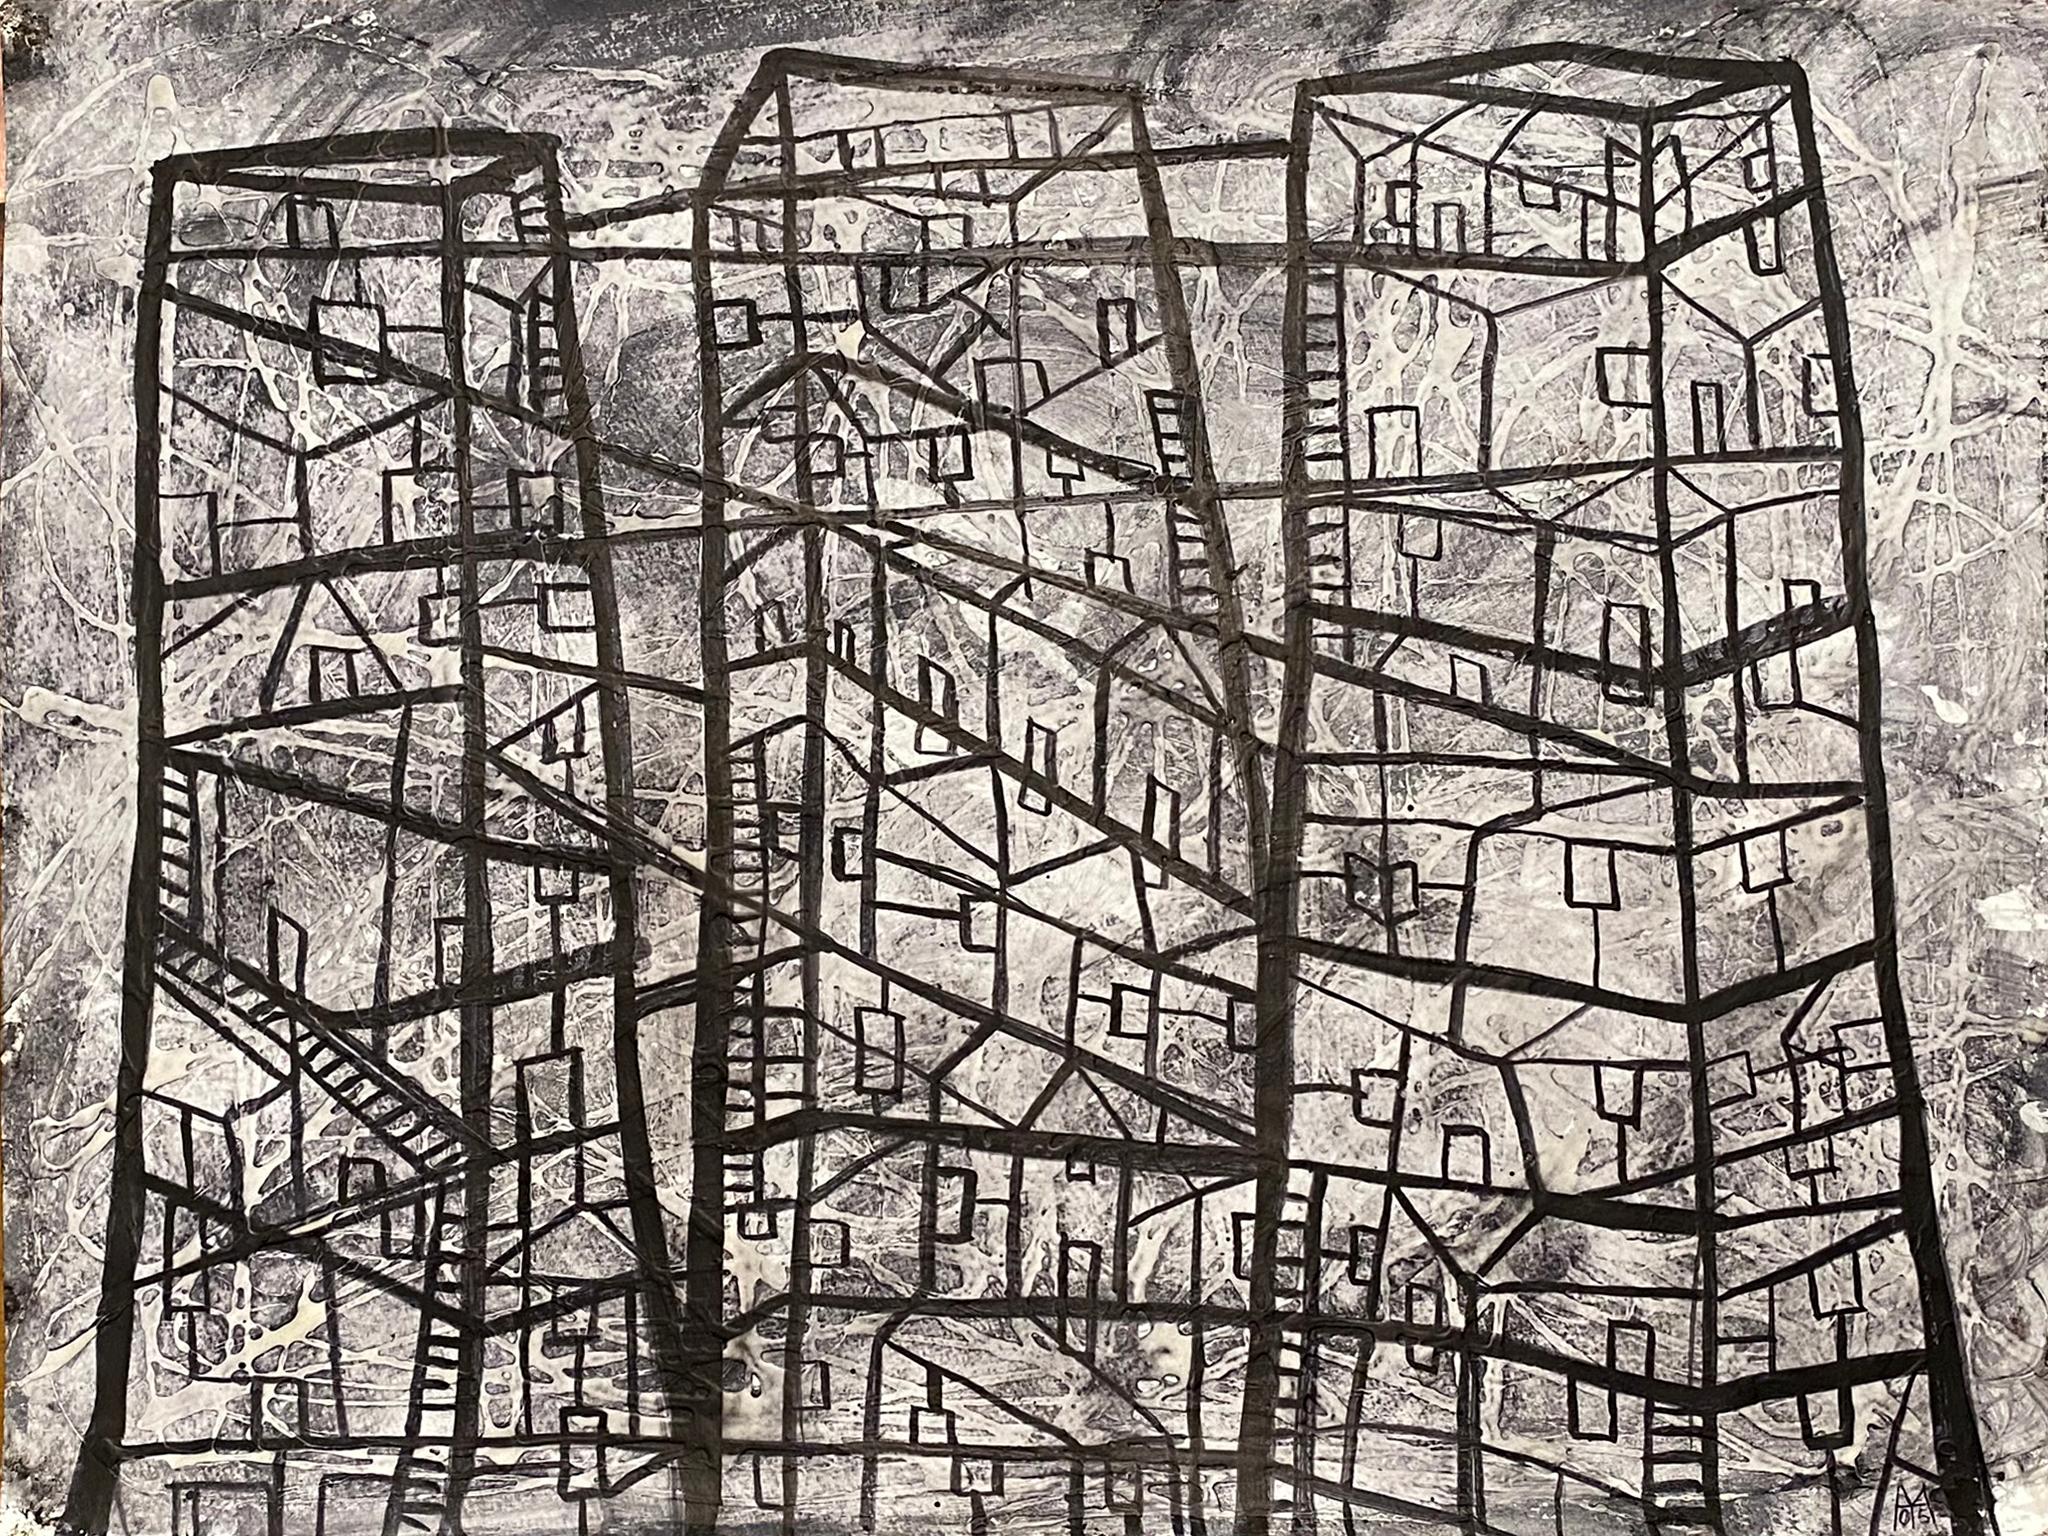 City Landscape #3, schwarz-weiße, monochrome urbane architektonische Abstraktion